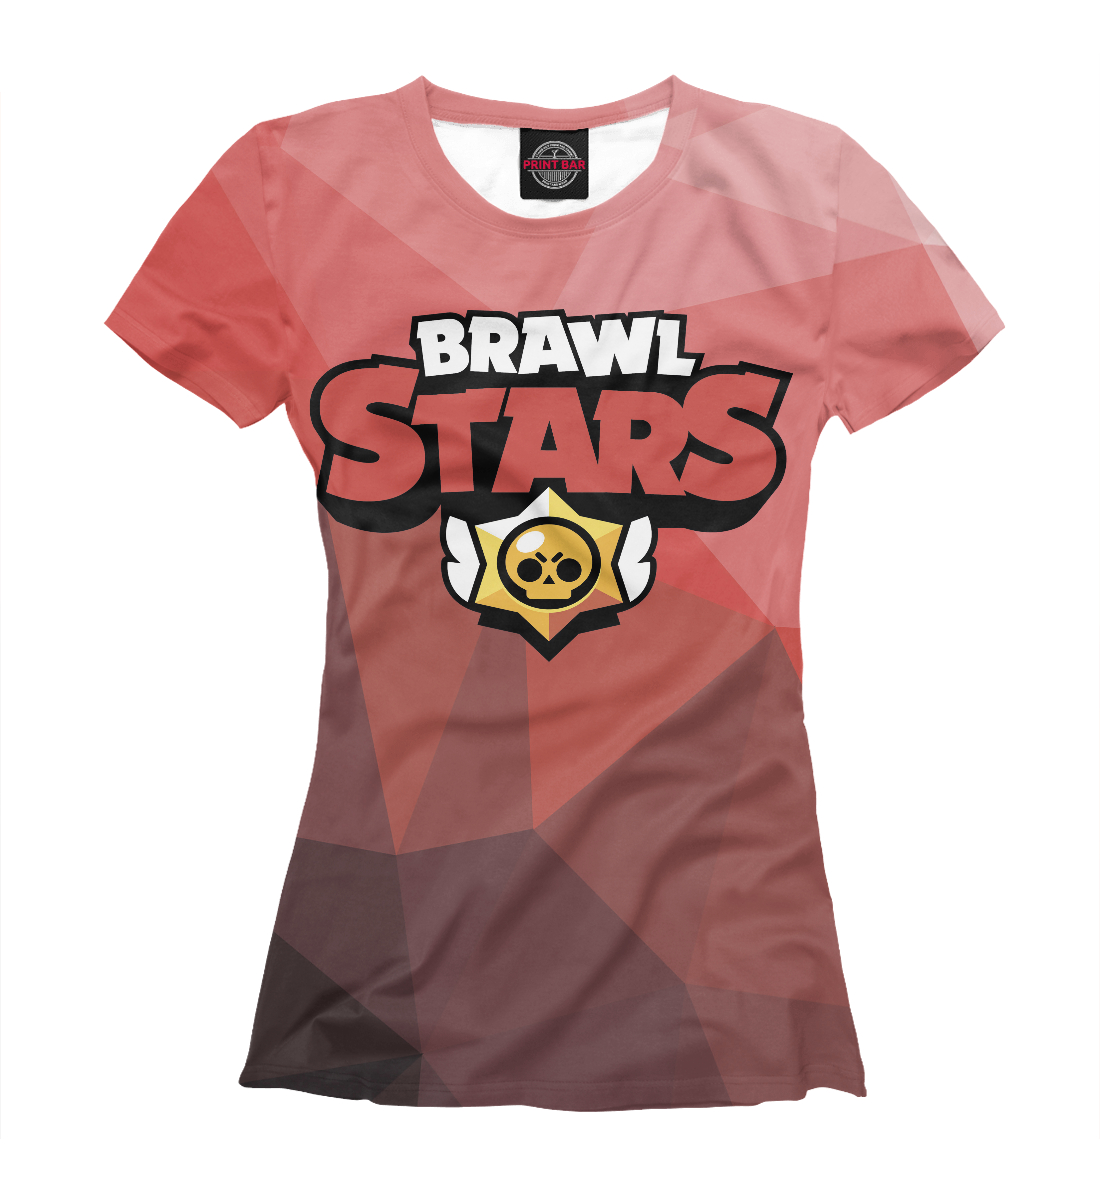 Футболка Brawl Stars для женщин, артикул: CLH-186575-fut-1mp